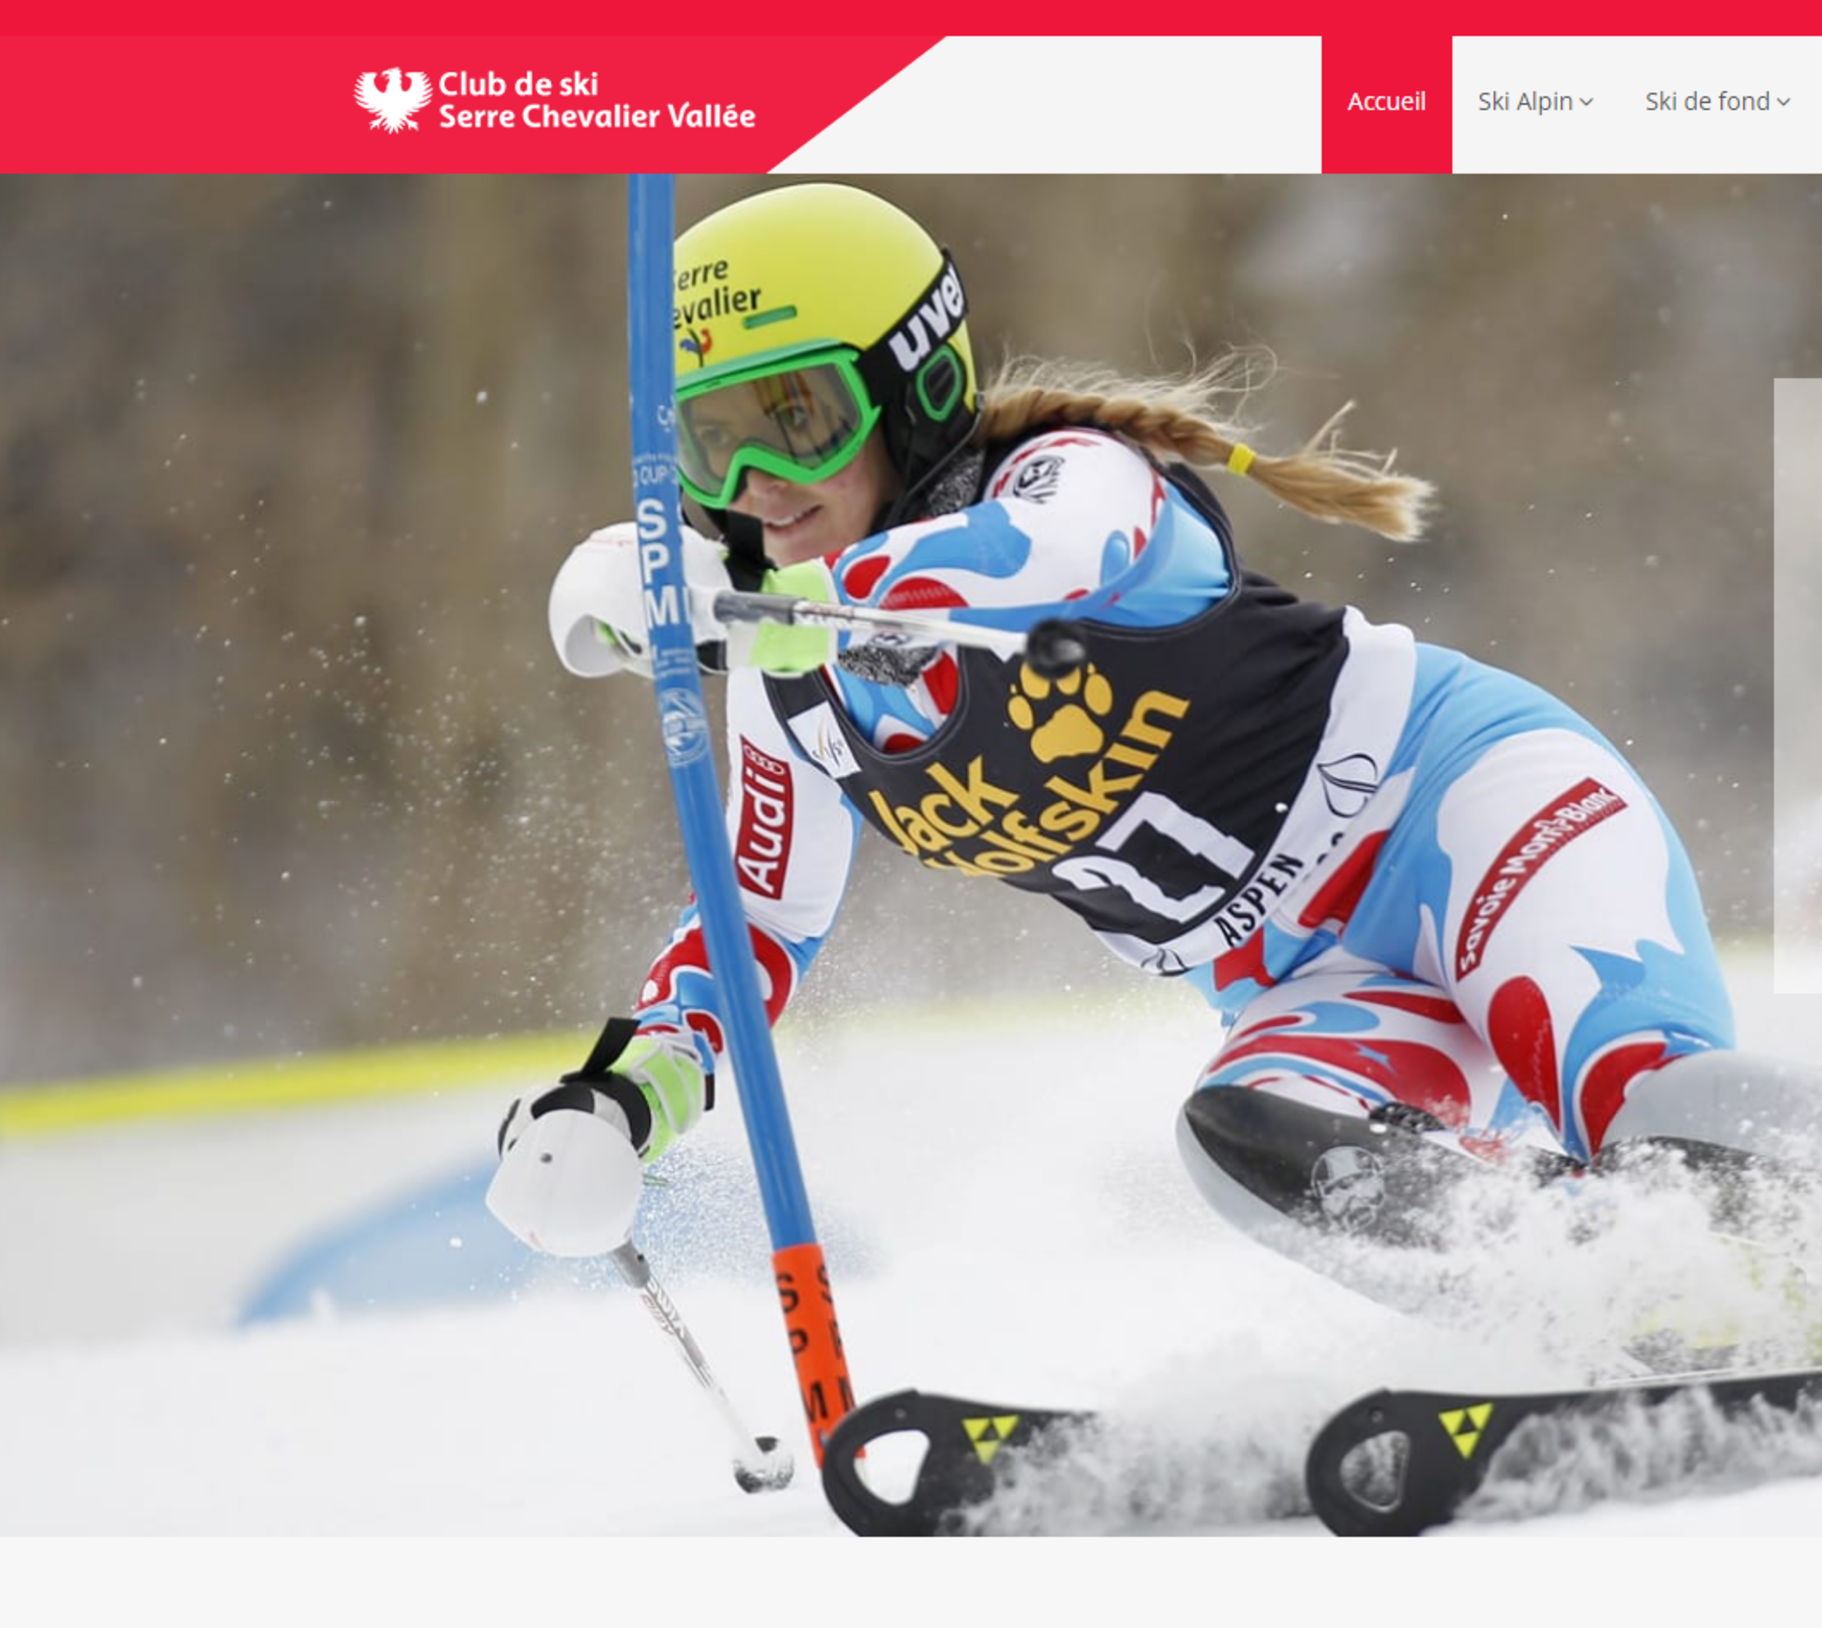 Le nouveau site responsive du club de ski de Serre Chevalier